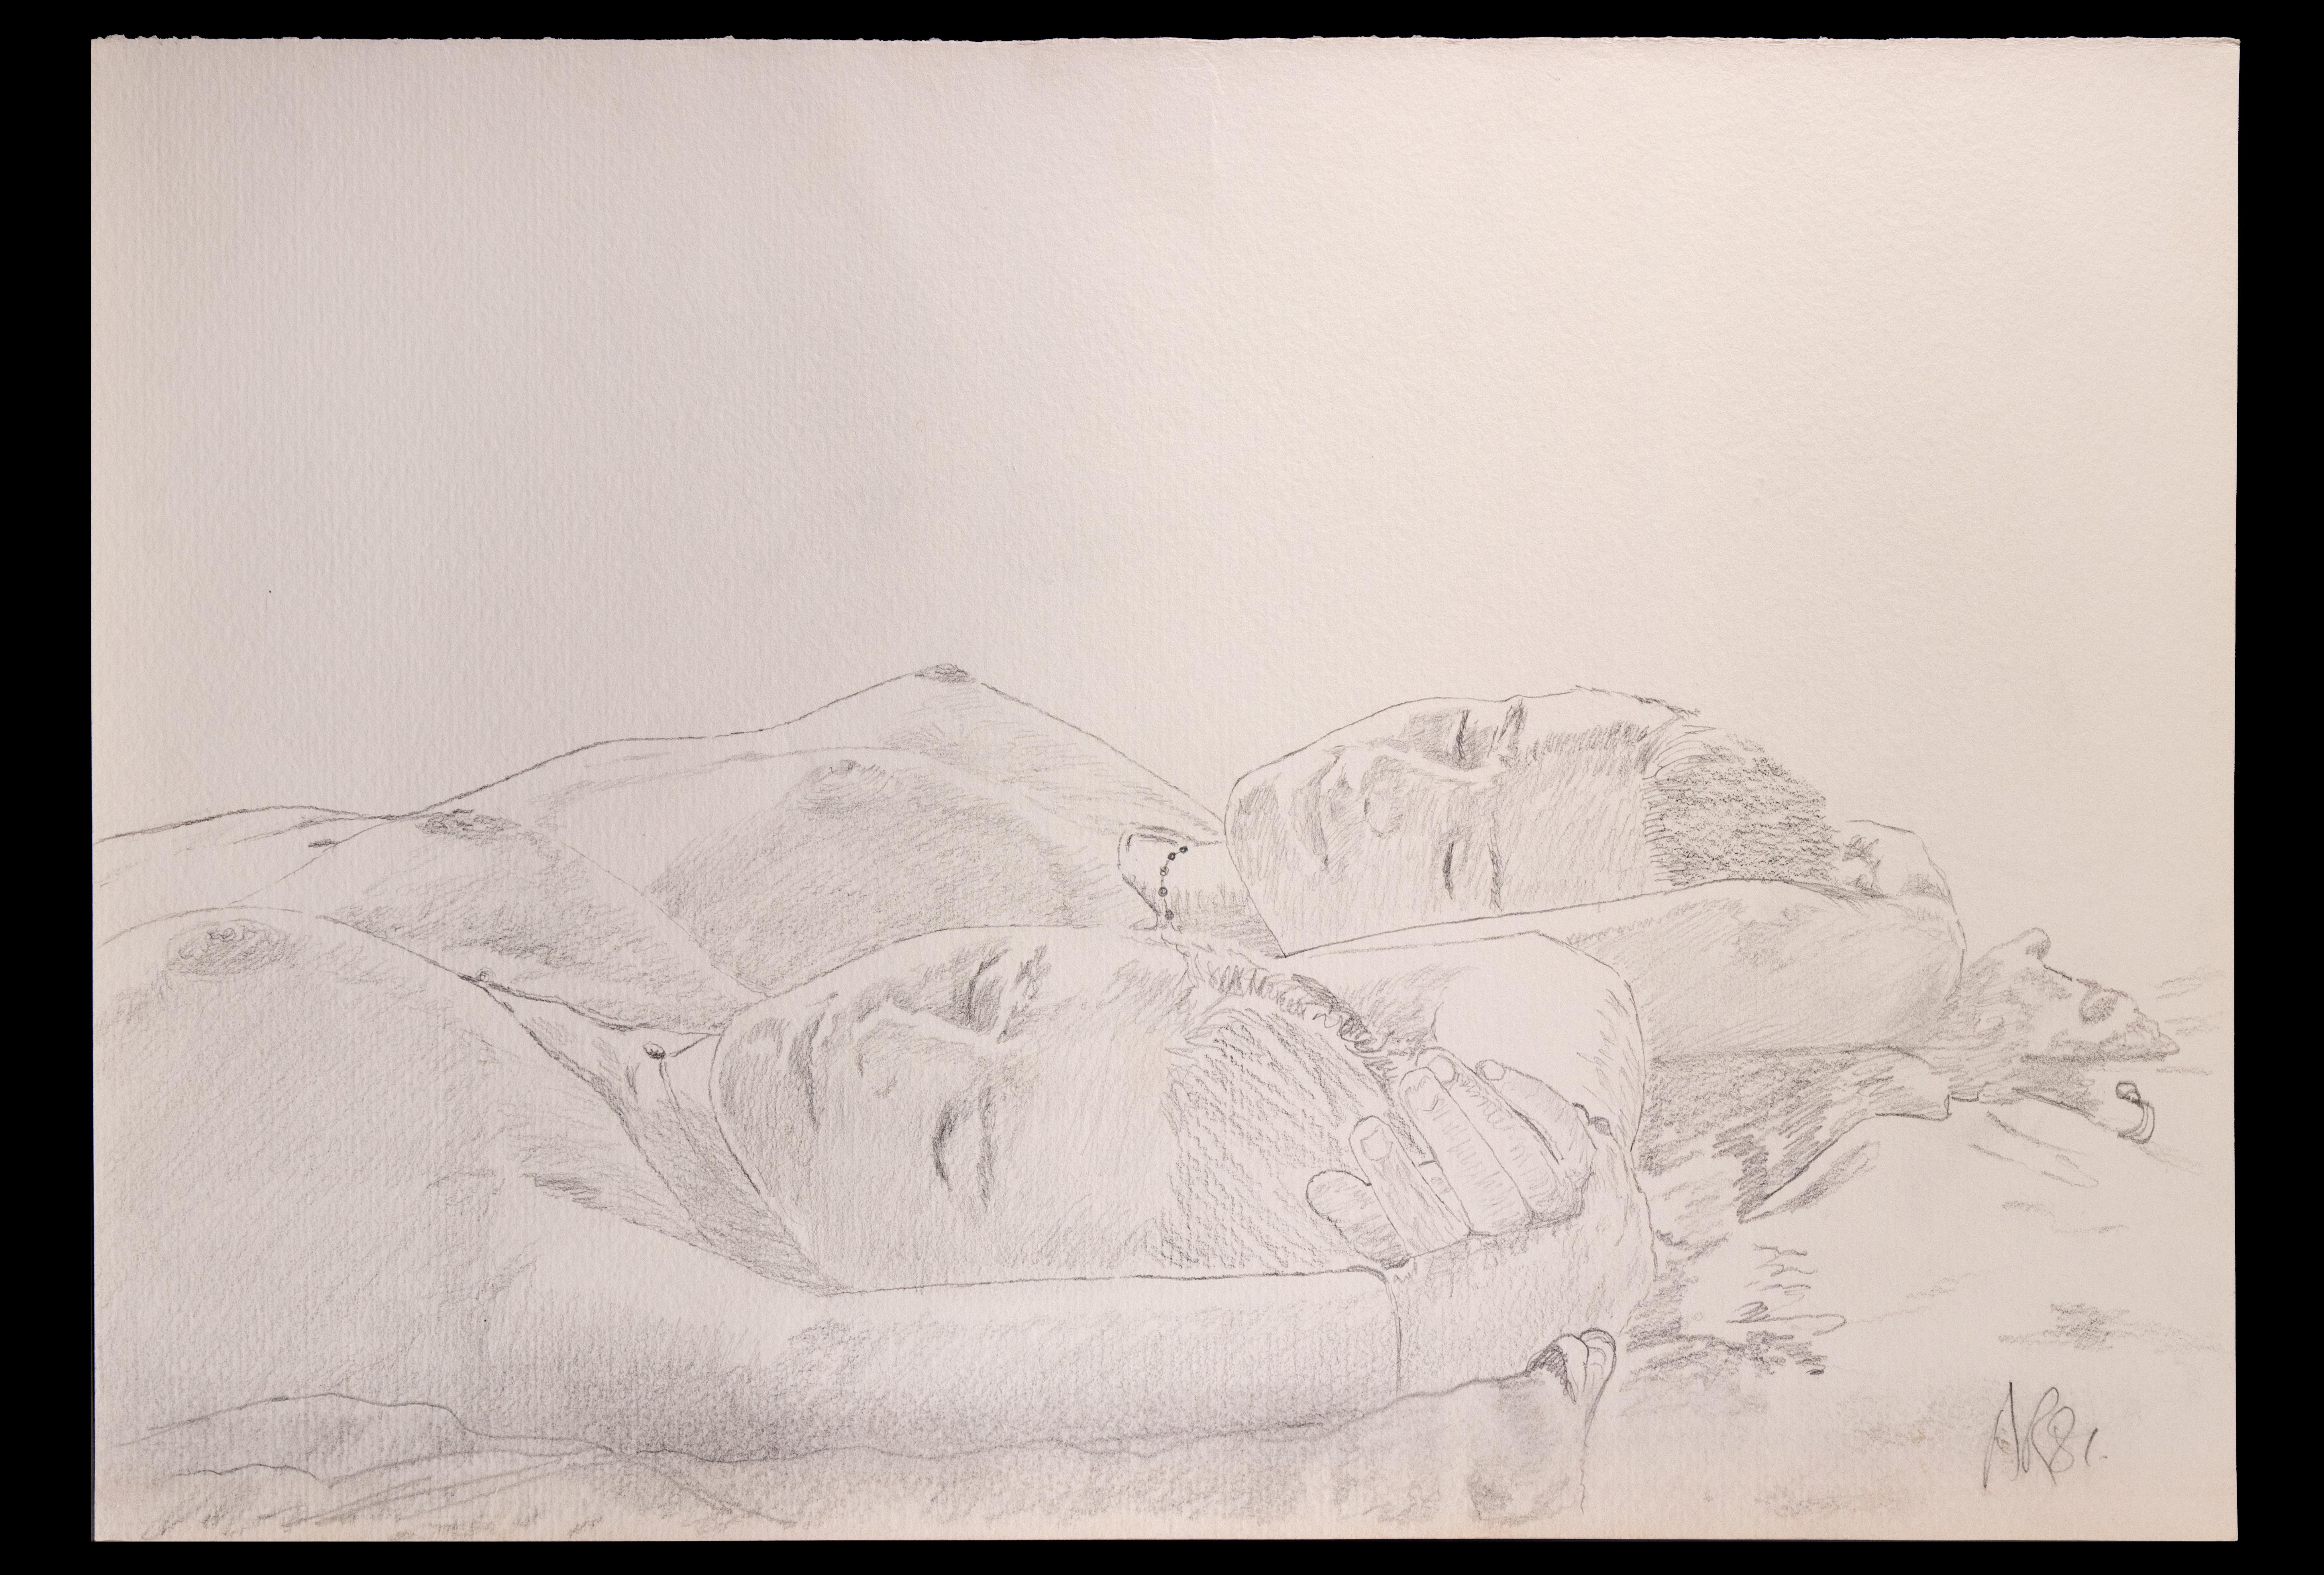 Schwestern  ist eine Originalzeichnung mit Bleistift von Anthony Roaland  ca. 1981. Vom Künstler am rechten unteren Rand handsigniert und datiert. 

Der Künstler stellt eine zarte und sinnliche, liegende Frauenfigur dar.  

Gute Bedingungen.